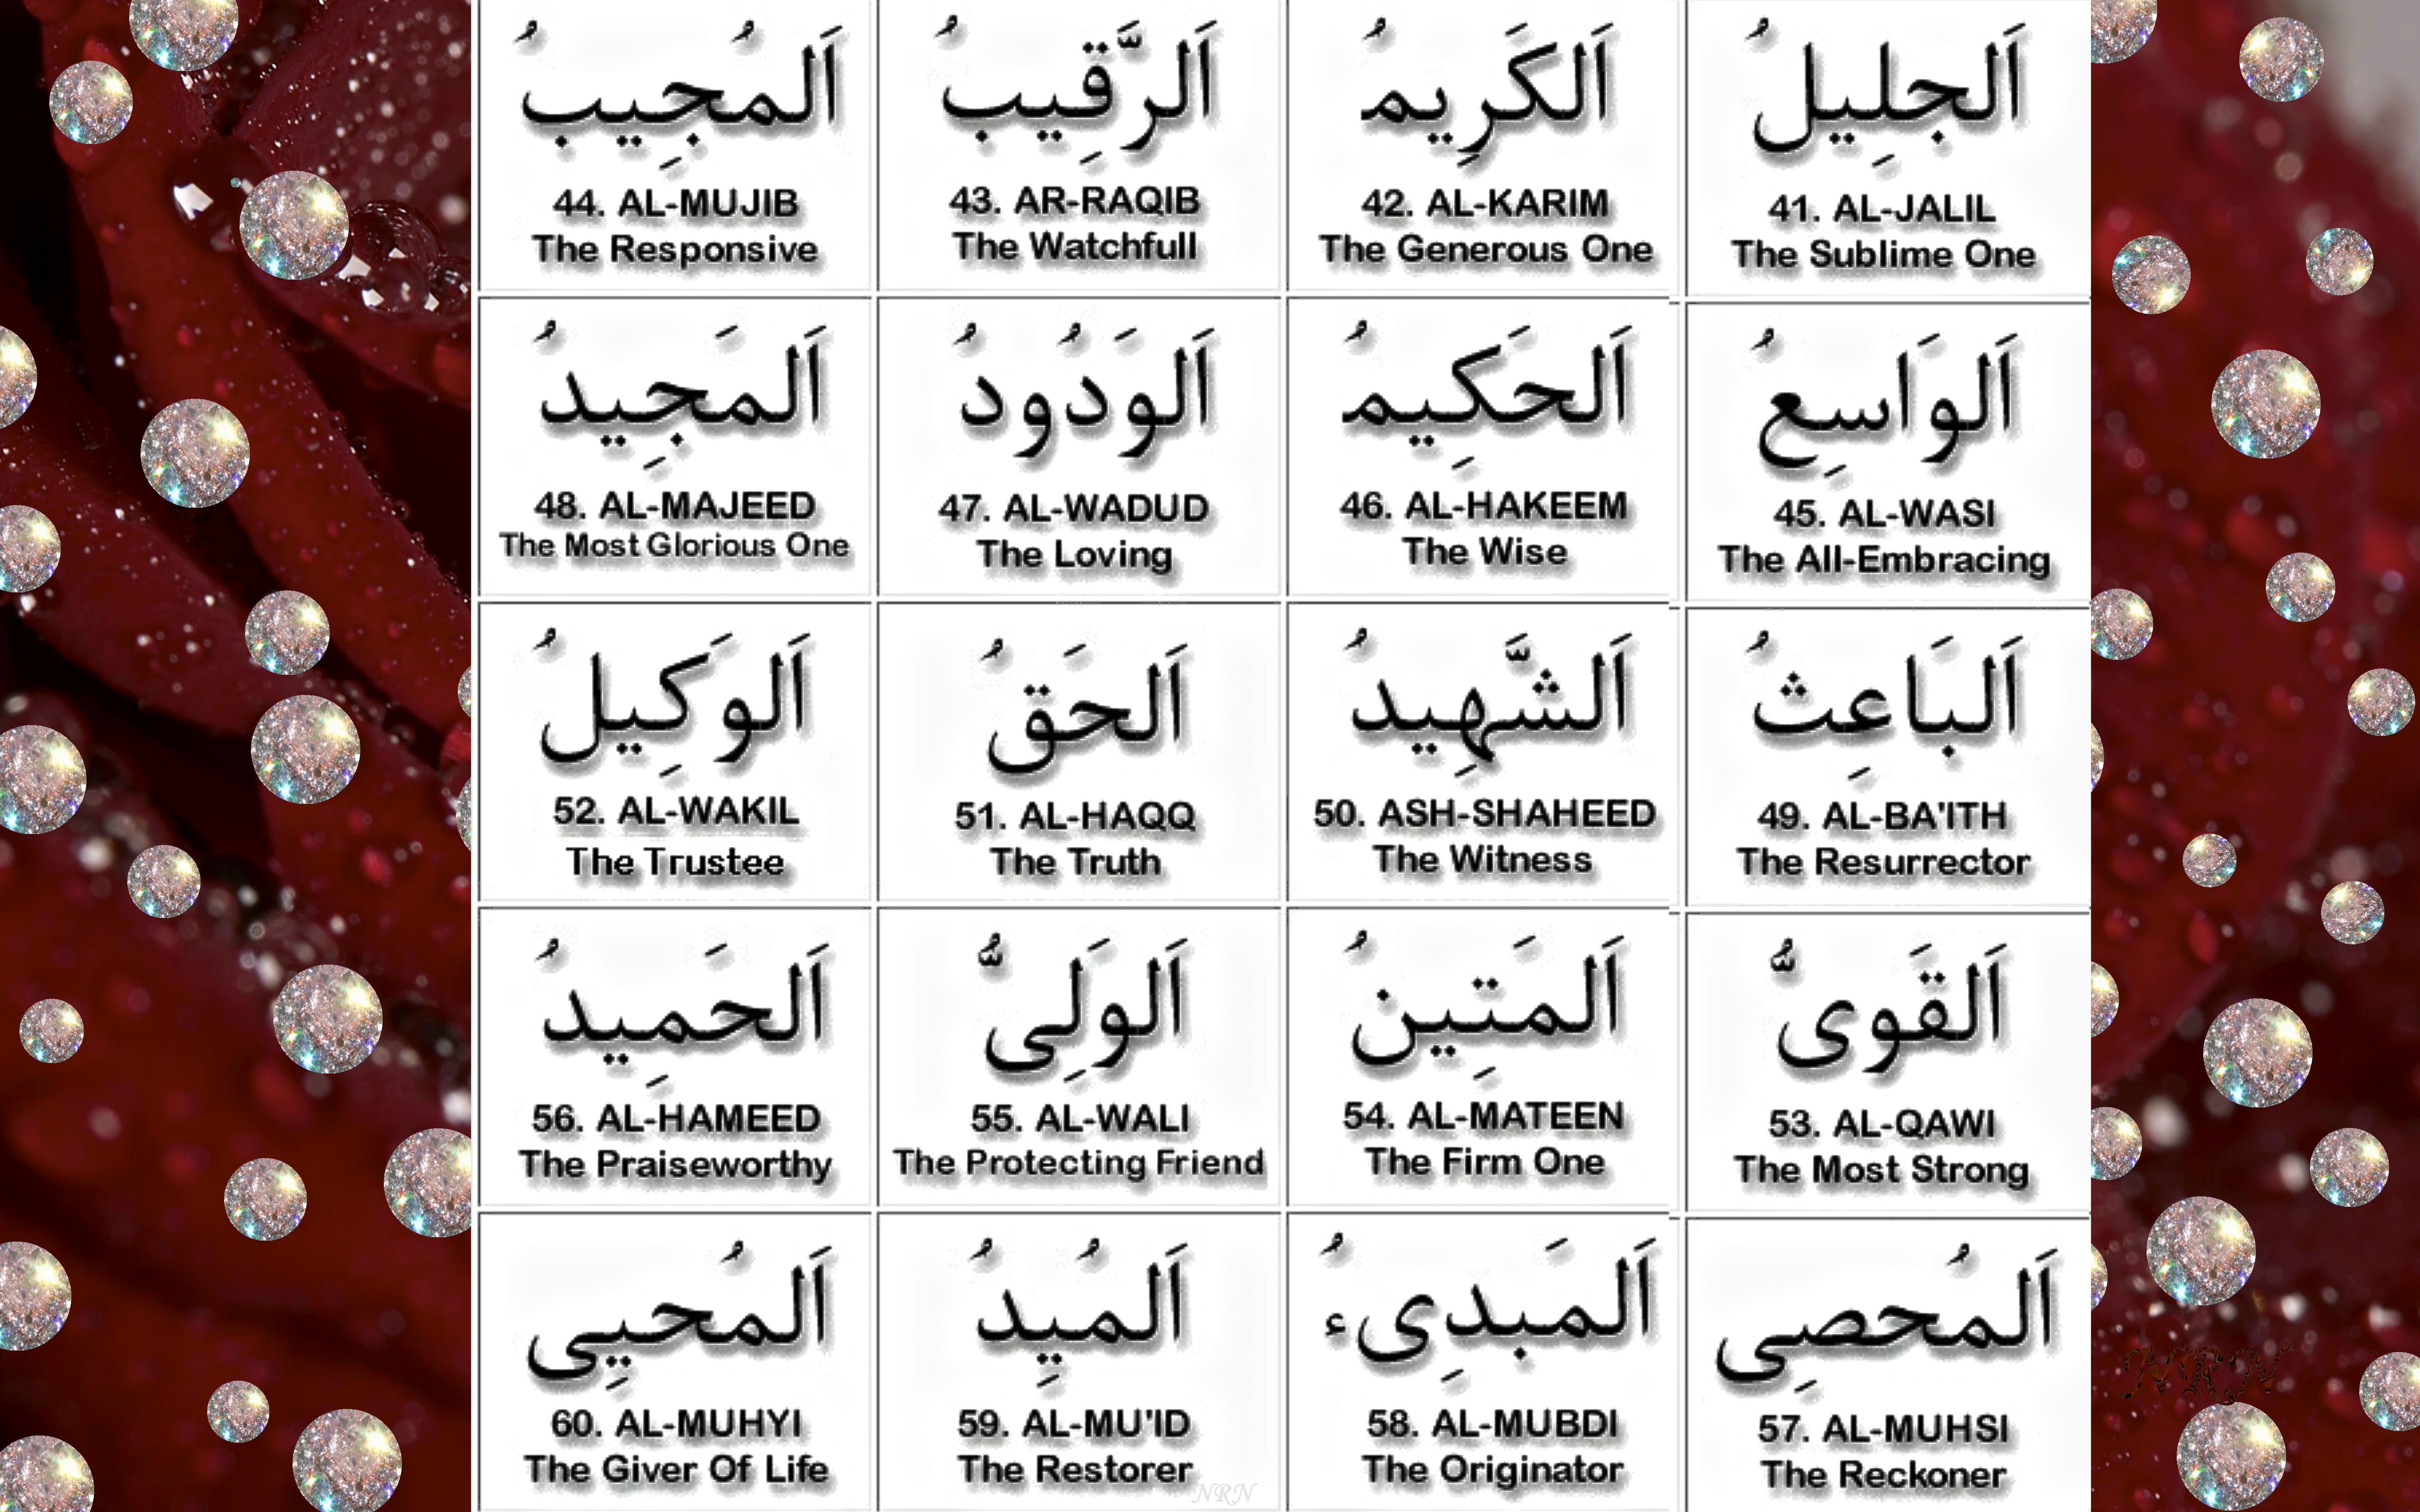 99 names of Allah - 3